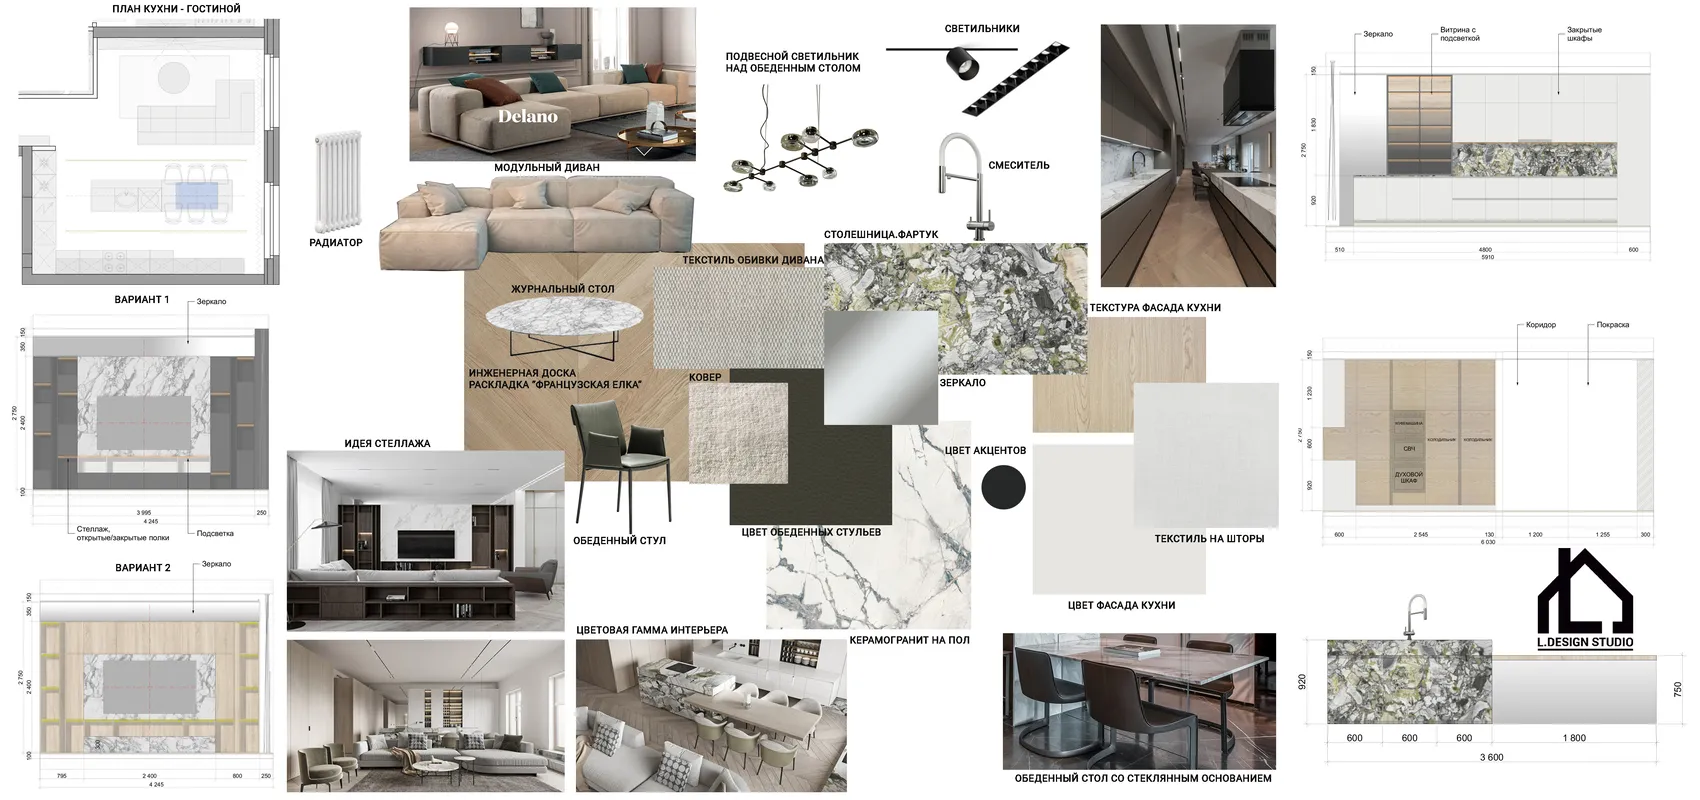 Разработка концепции помещения: шаги к созданию стильного и уникального дизайна